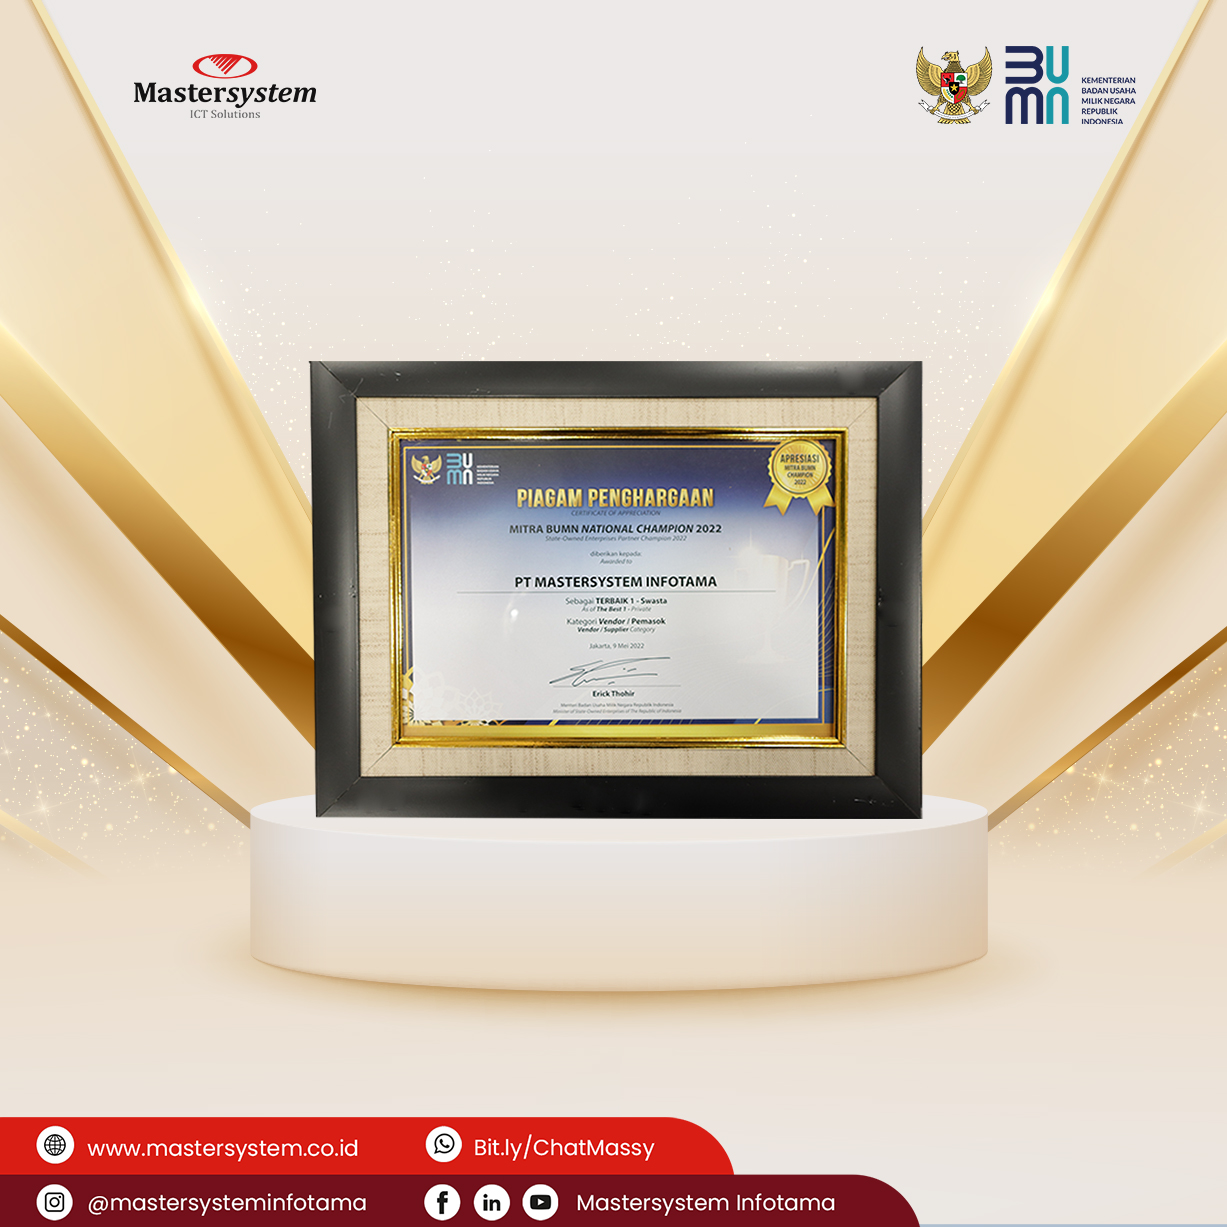 Mastersystem raih penghargaan “Terbaik 1 – Swasta” dalam Apresiasi Mitra BUMN